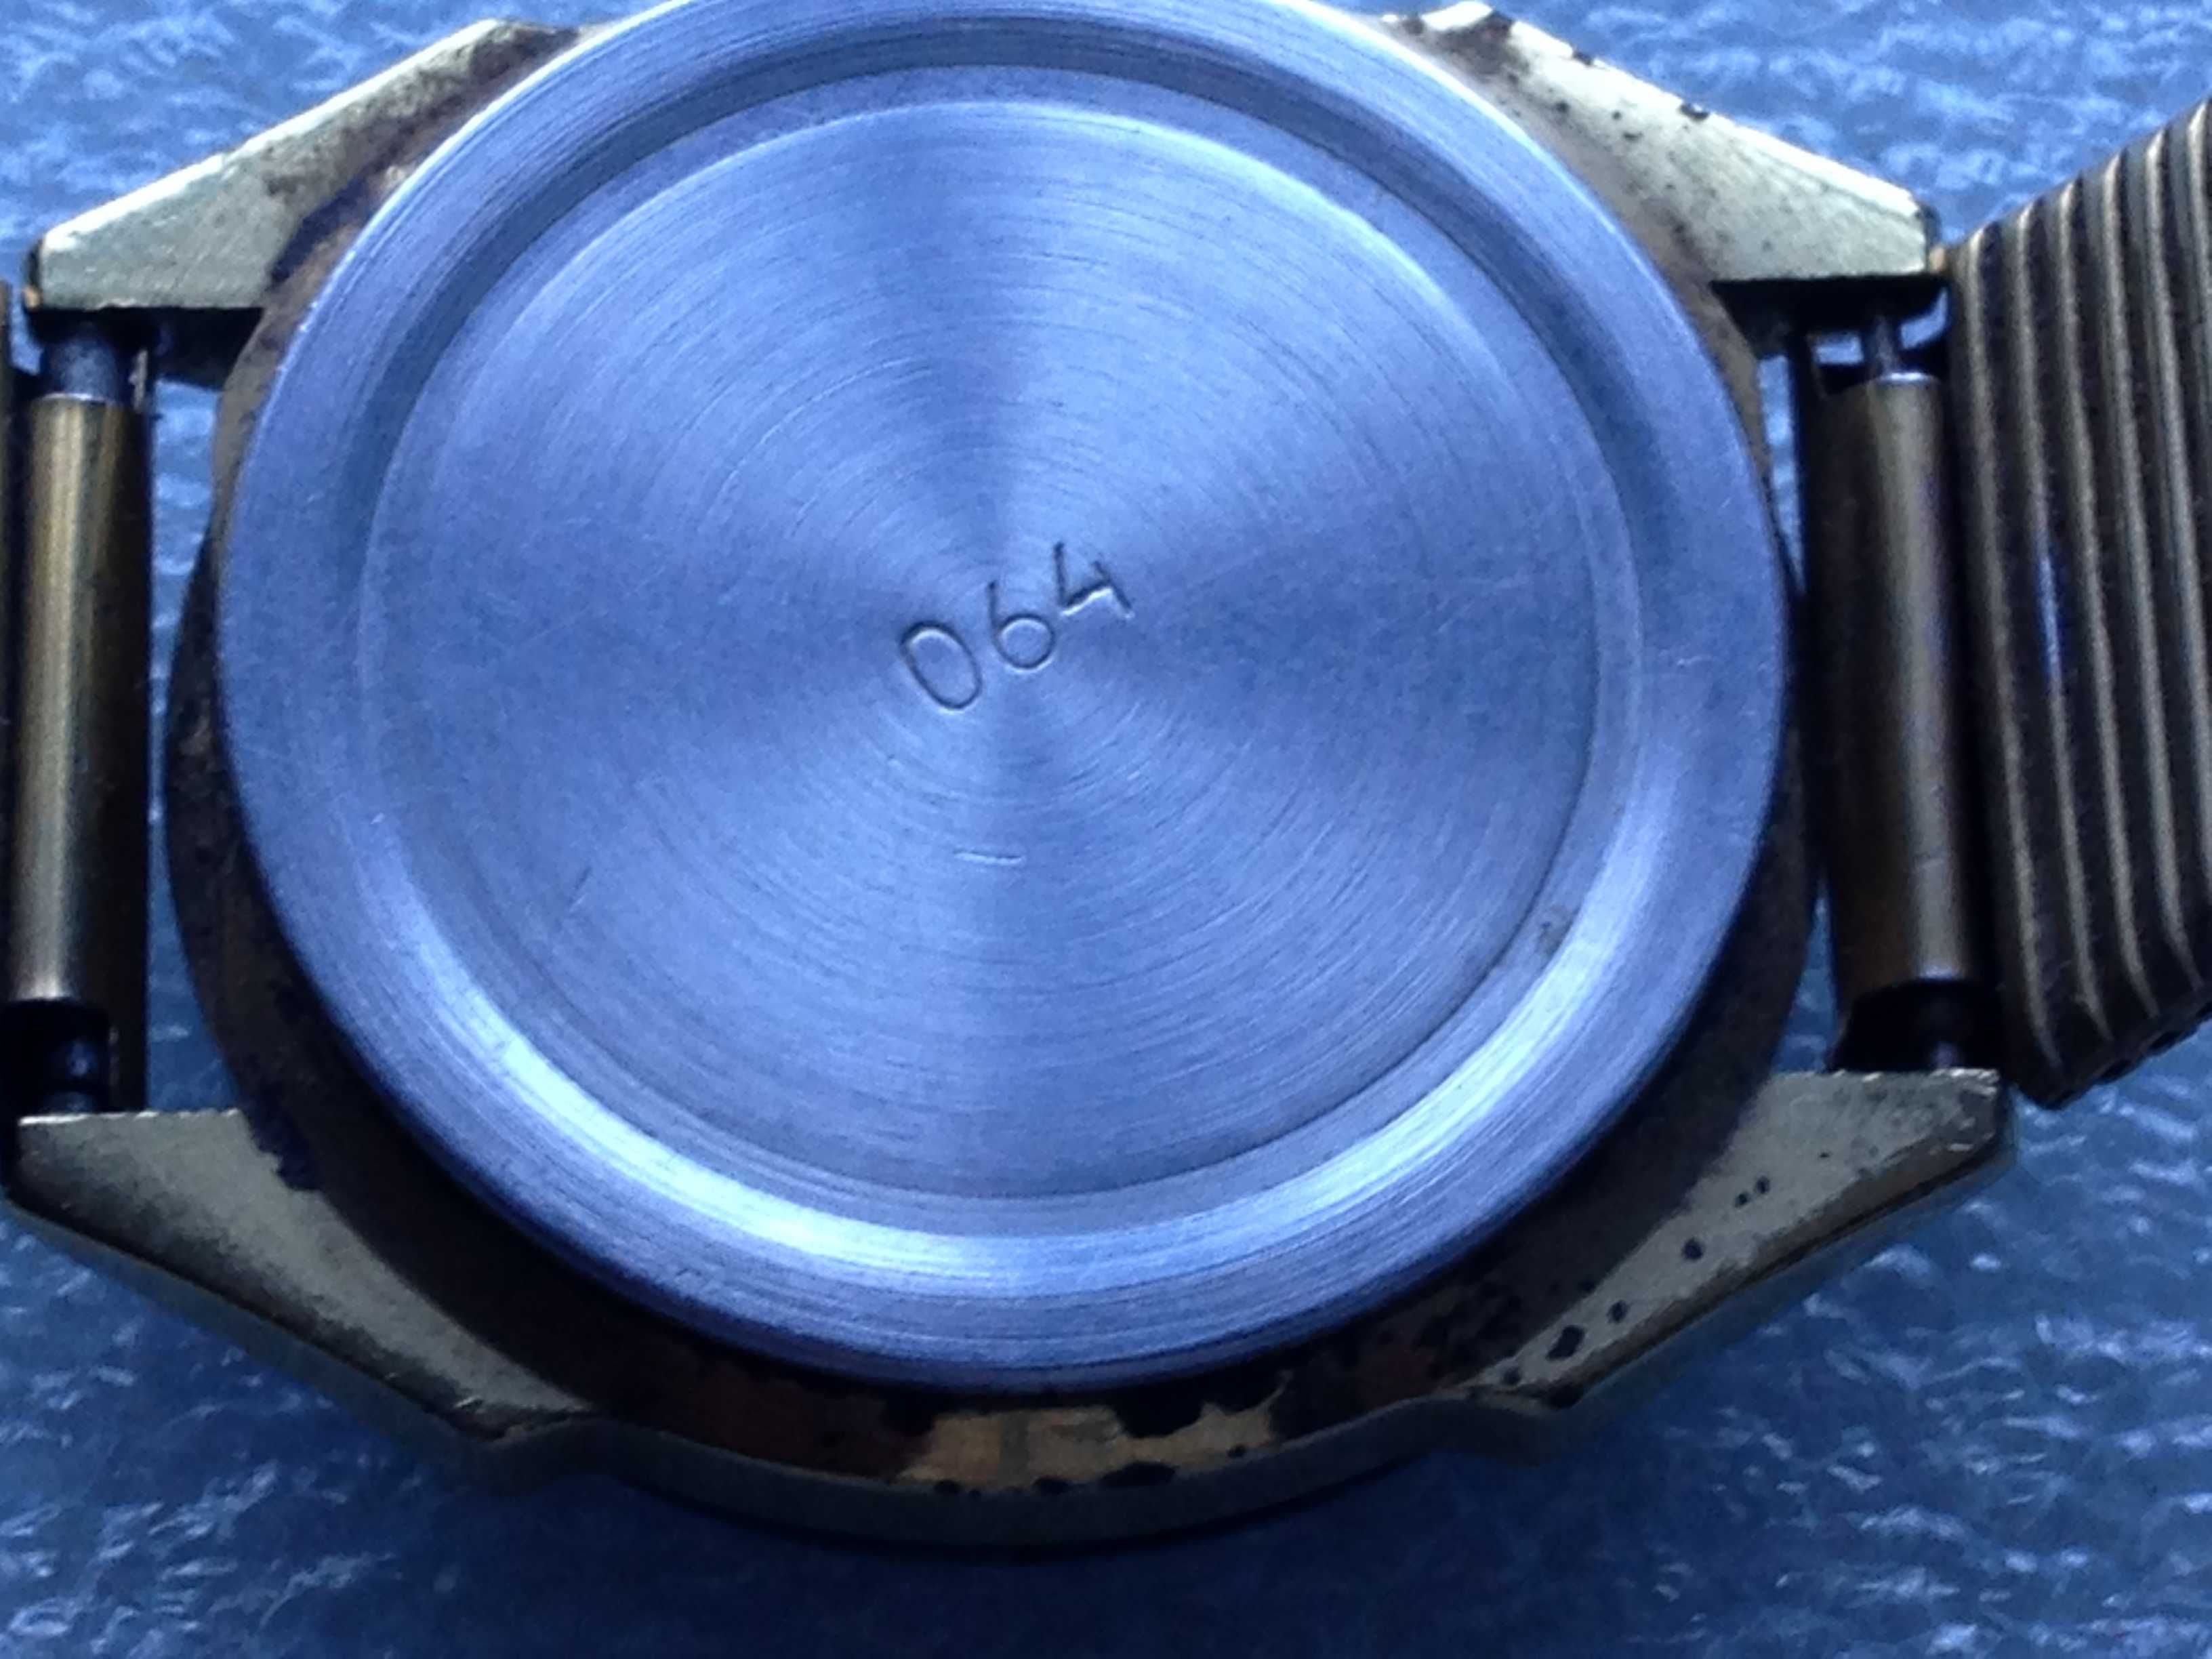 Часы нерабочие наручные кварцевые Луч-кварц будильник браслет годинник